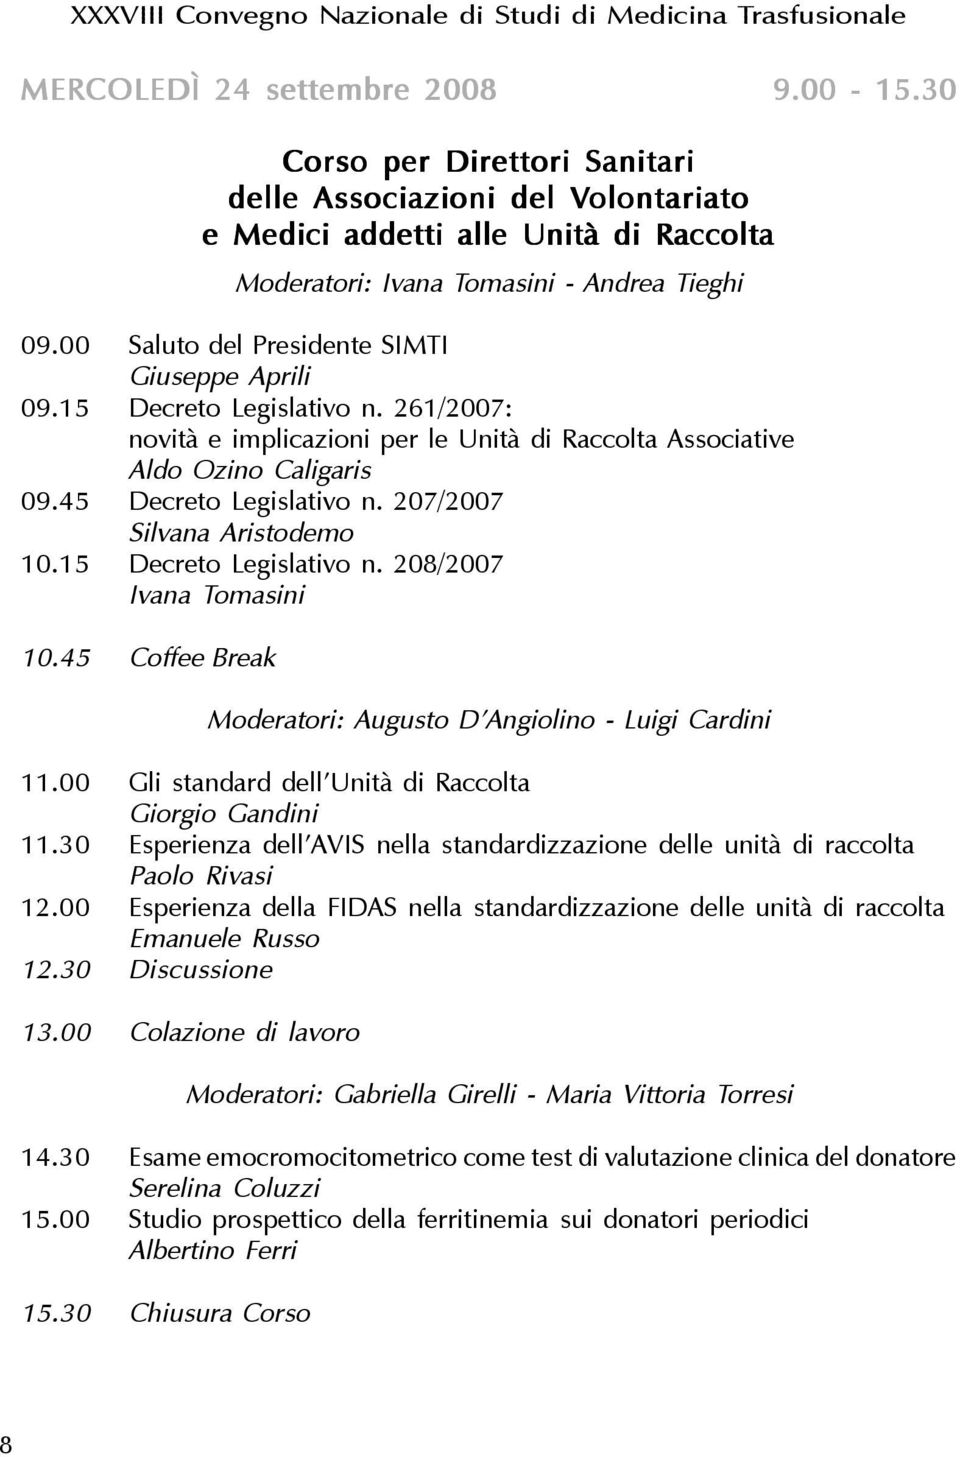 208/2007 Ivana Tomasini 10.45 Coffee Break Moderatori: Augusto D Angiolino - Luigi Cardini 11.00 Gli standard dell Unità di Raccolta Giorgio Gandini 11.